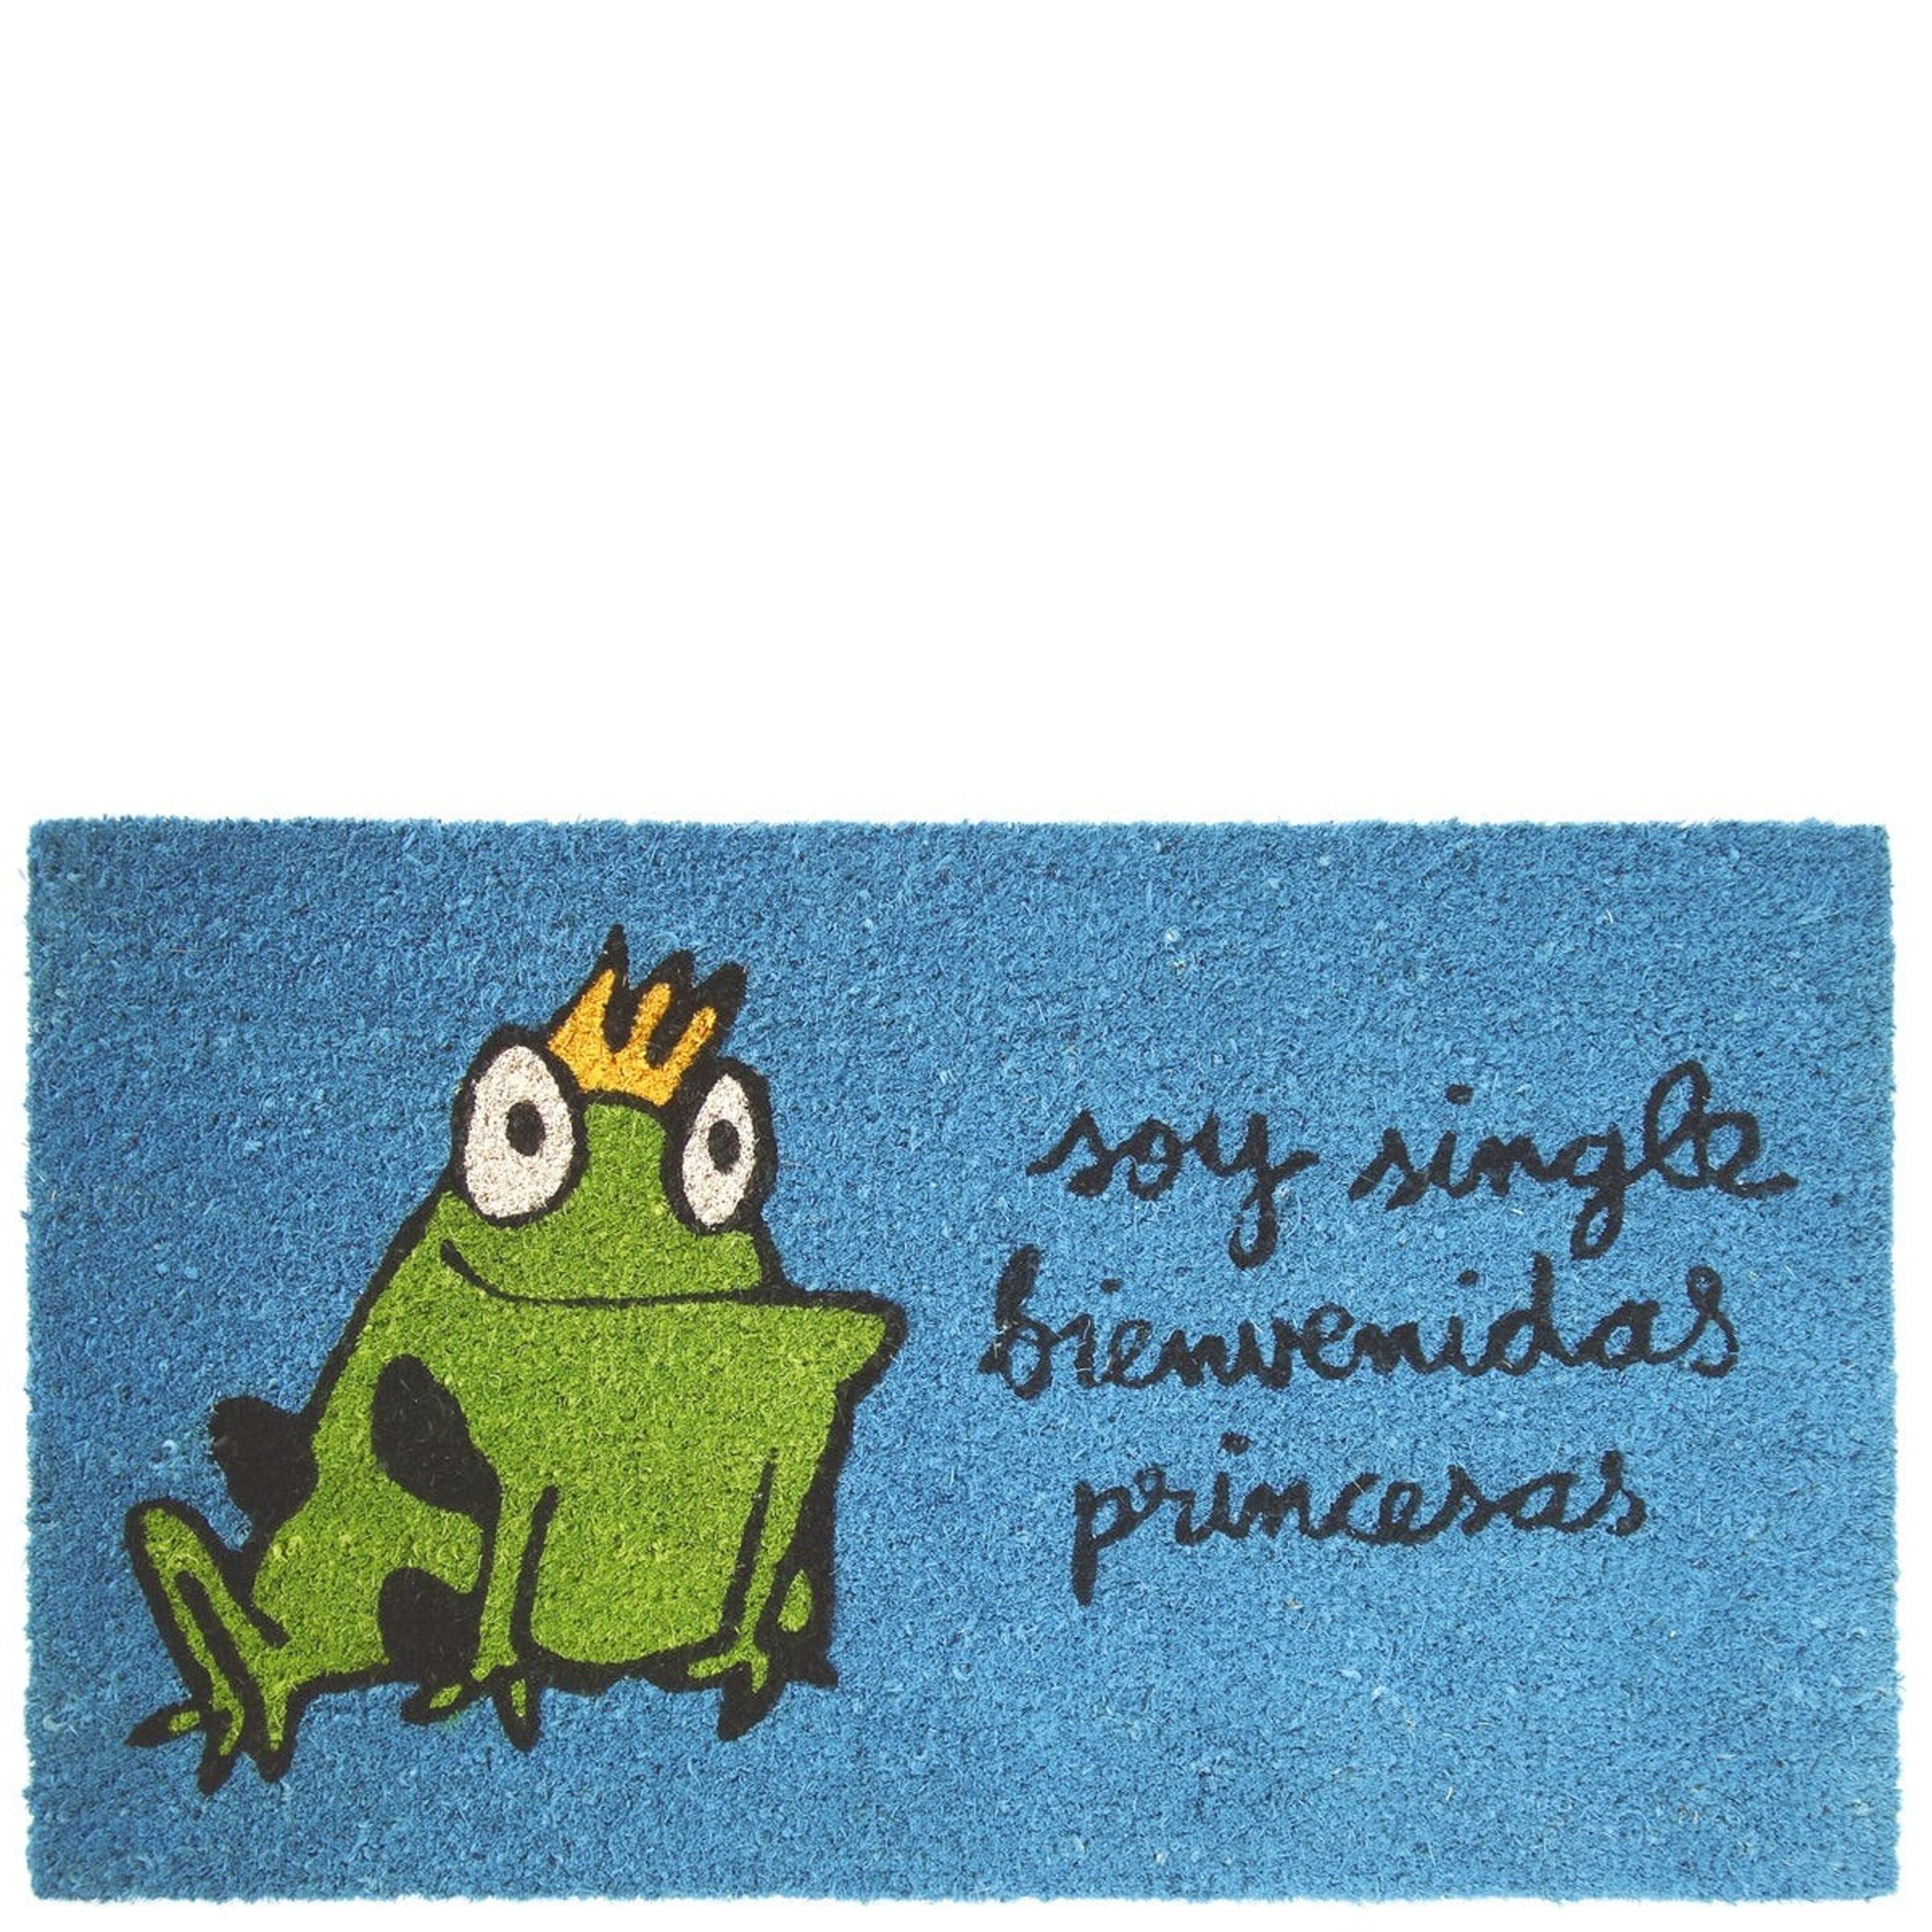 Buy wholesale Doormat soy single bienvenidas princesas blue